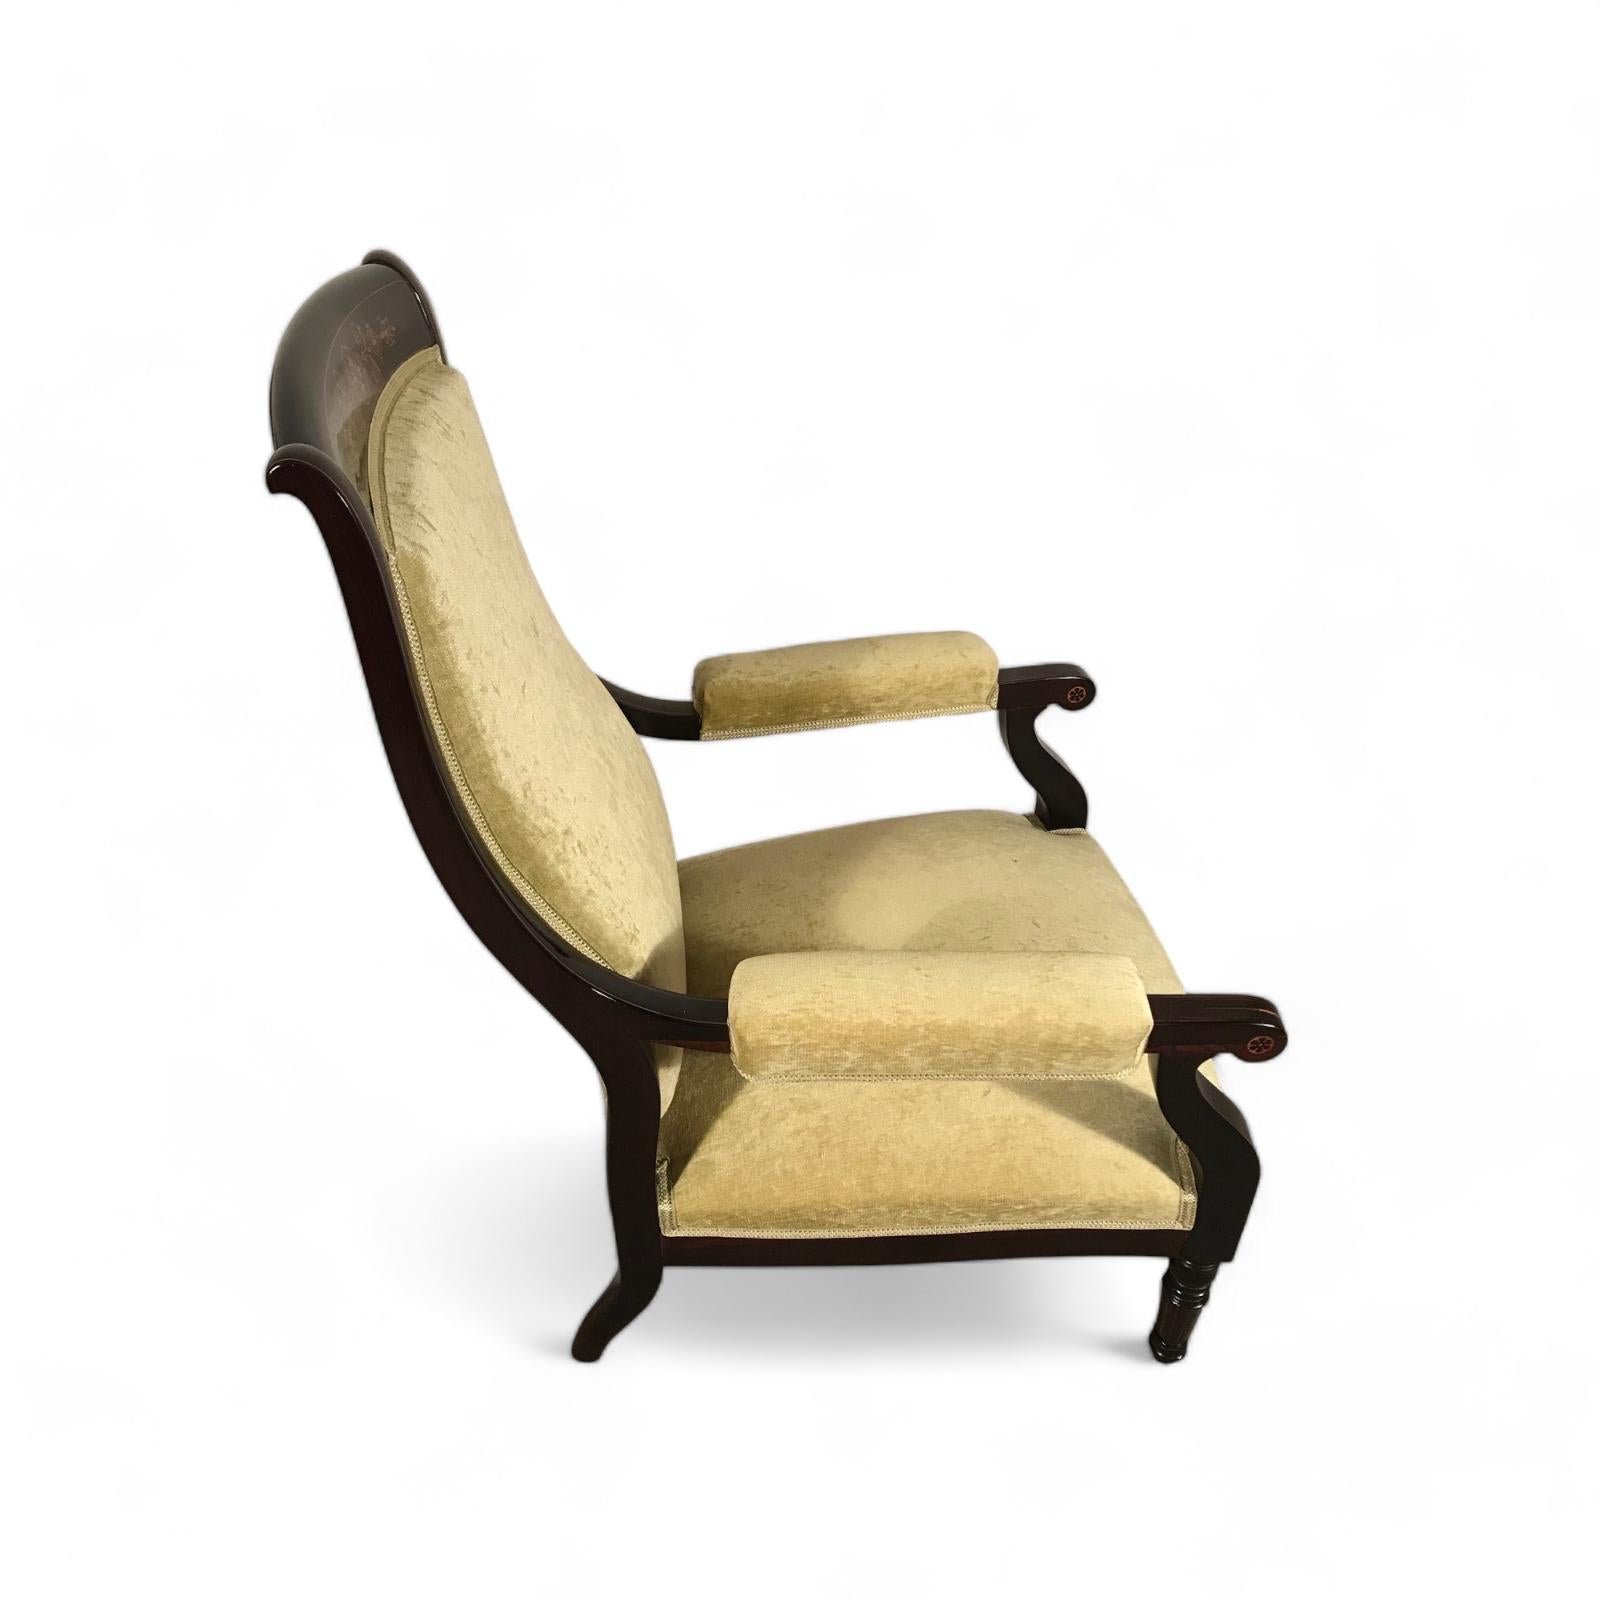 Dieser niedrige Sessel stammt aus der Zeit um 1840 und kommt aus Frankreich. Der Stuhl stammt aus der Zeit der französischen Restauration.
Es gibt eine interessante Erklärung, warum im 19. Jahrhundert niedrige Stühle hergestellt wurden. Das niedrige